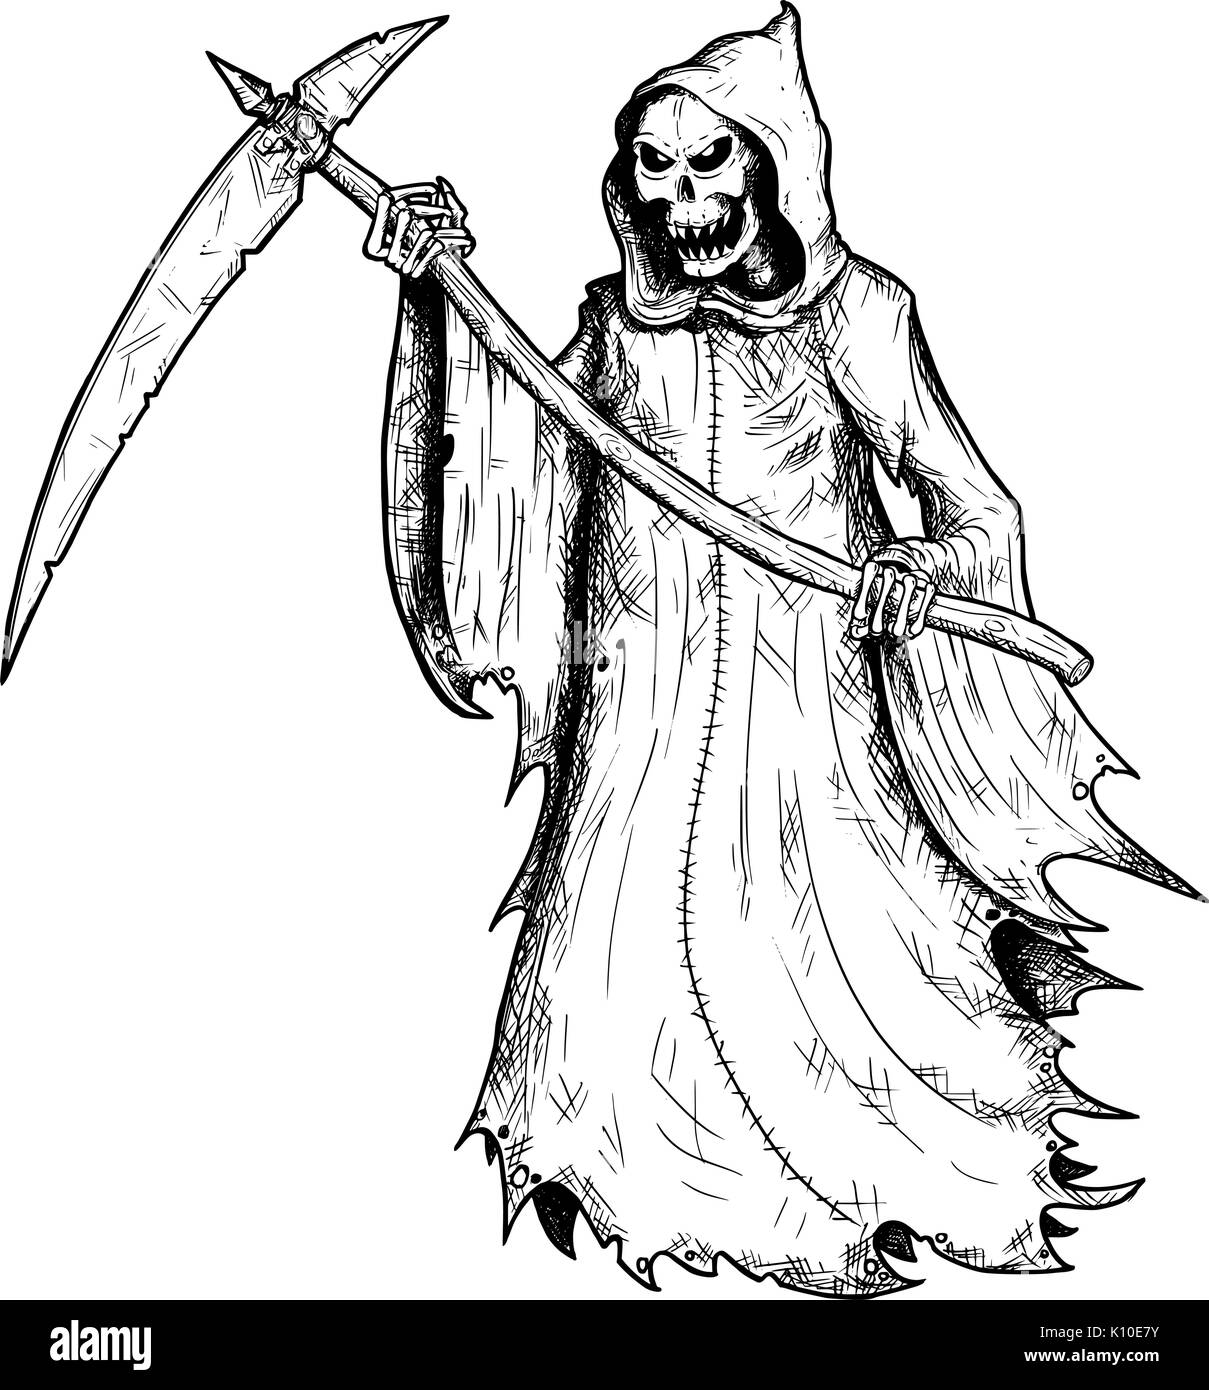 Dessin illustration de Grim Reaper halloween, squelette humain avec scythe, personnification de la mort. Illustration de Vecteur